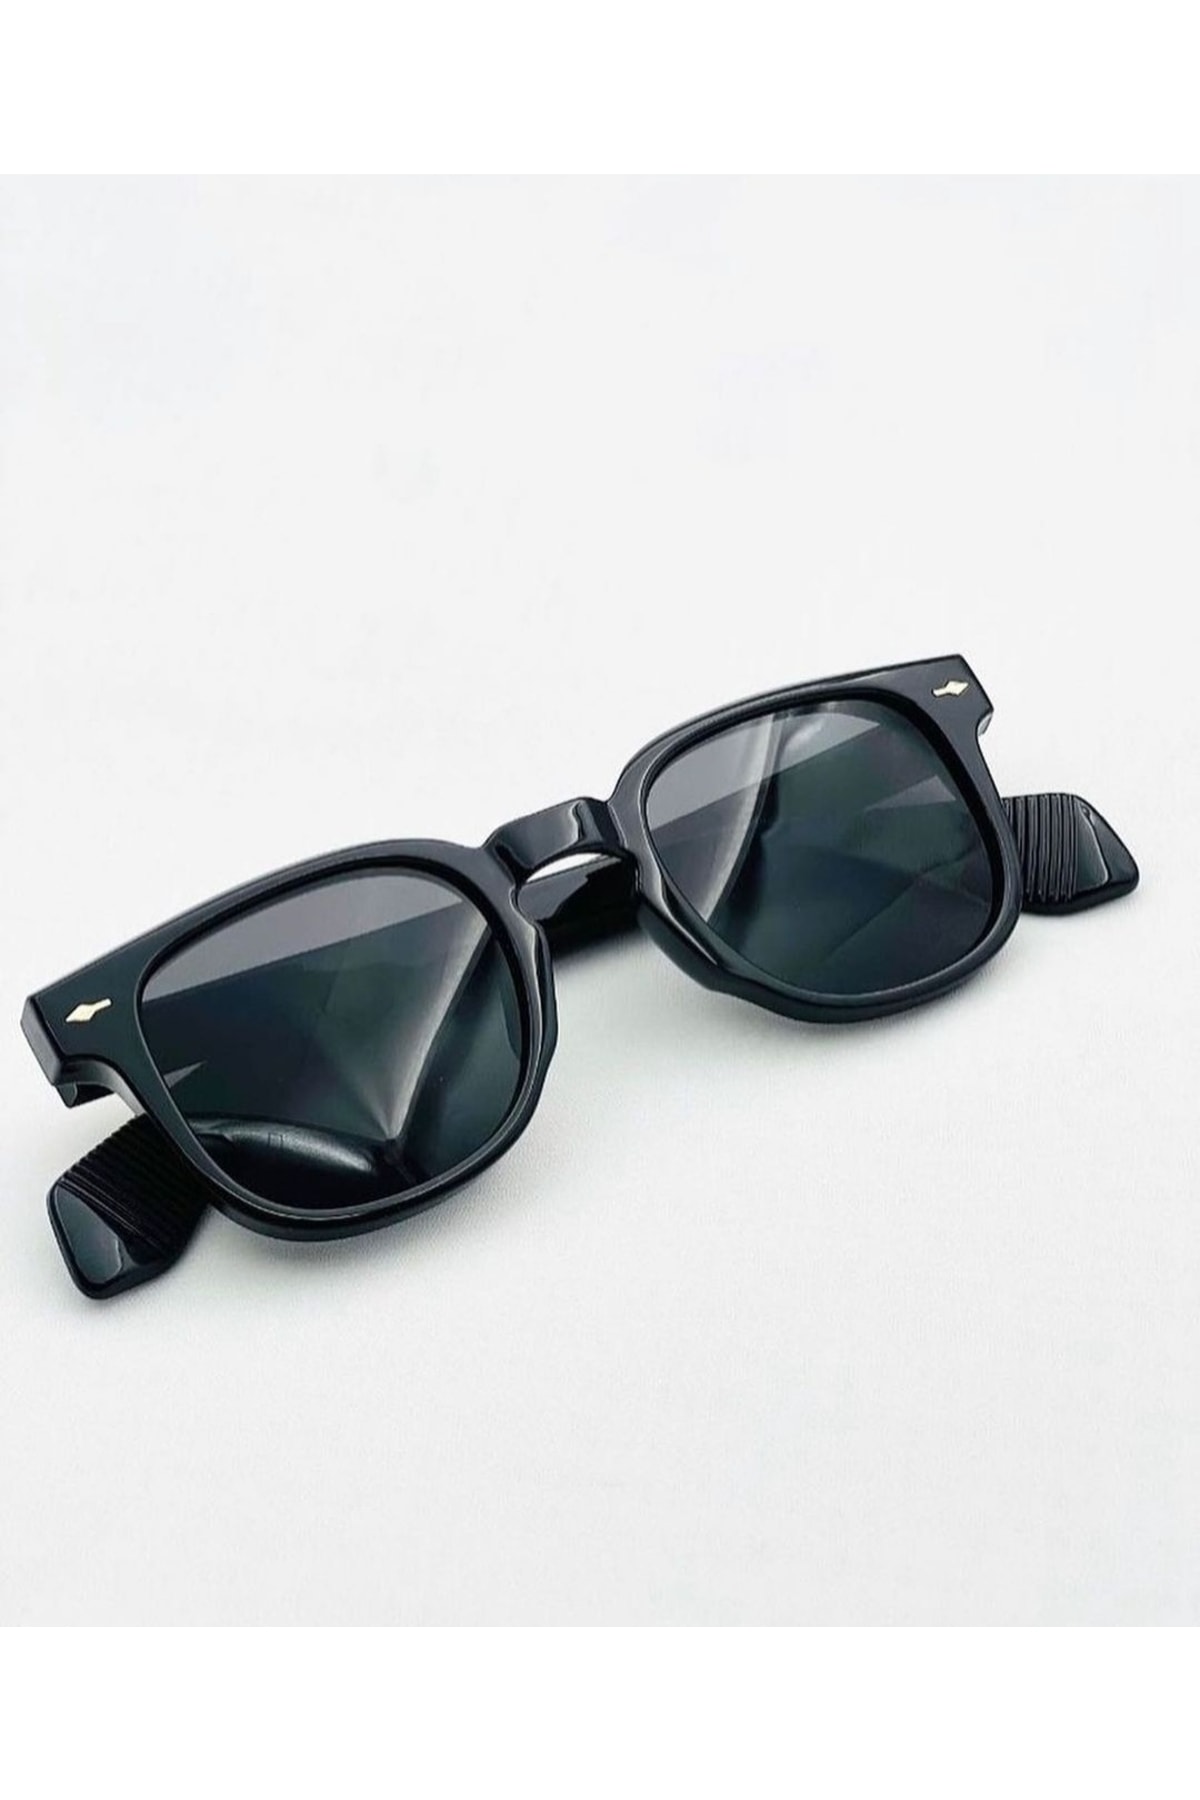 ONNObutik Erkek Güneş Gözlüğü - Man Sunglasses - Tüm Yüz Tiplerine Uyumlu